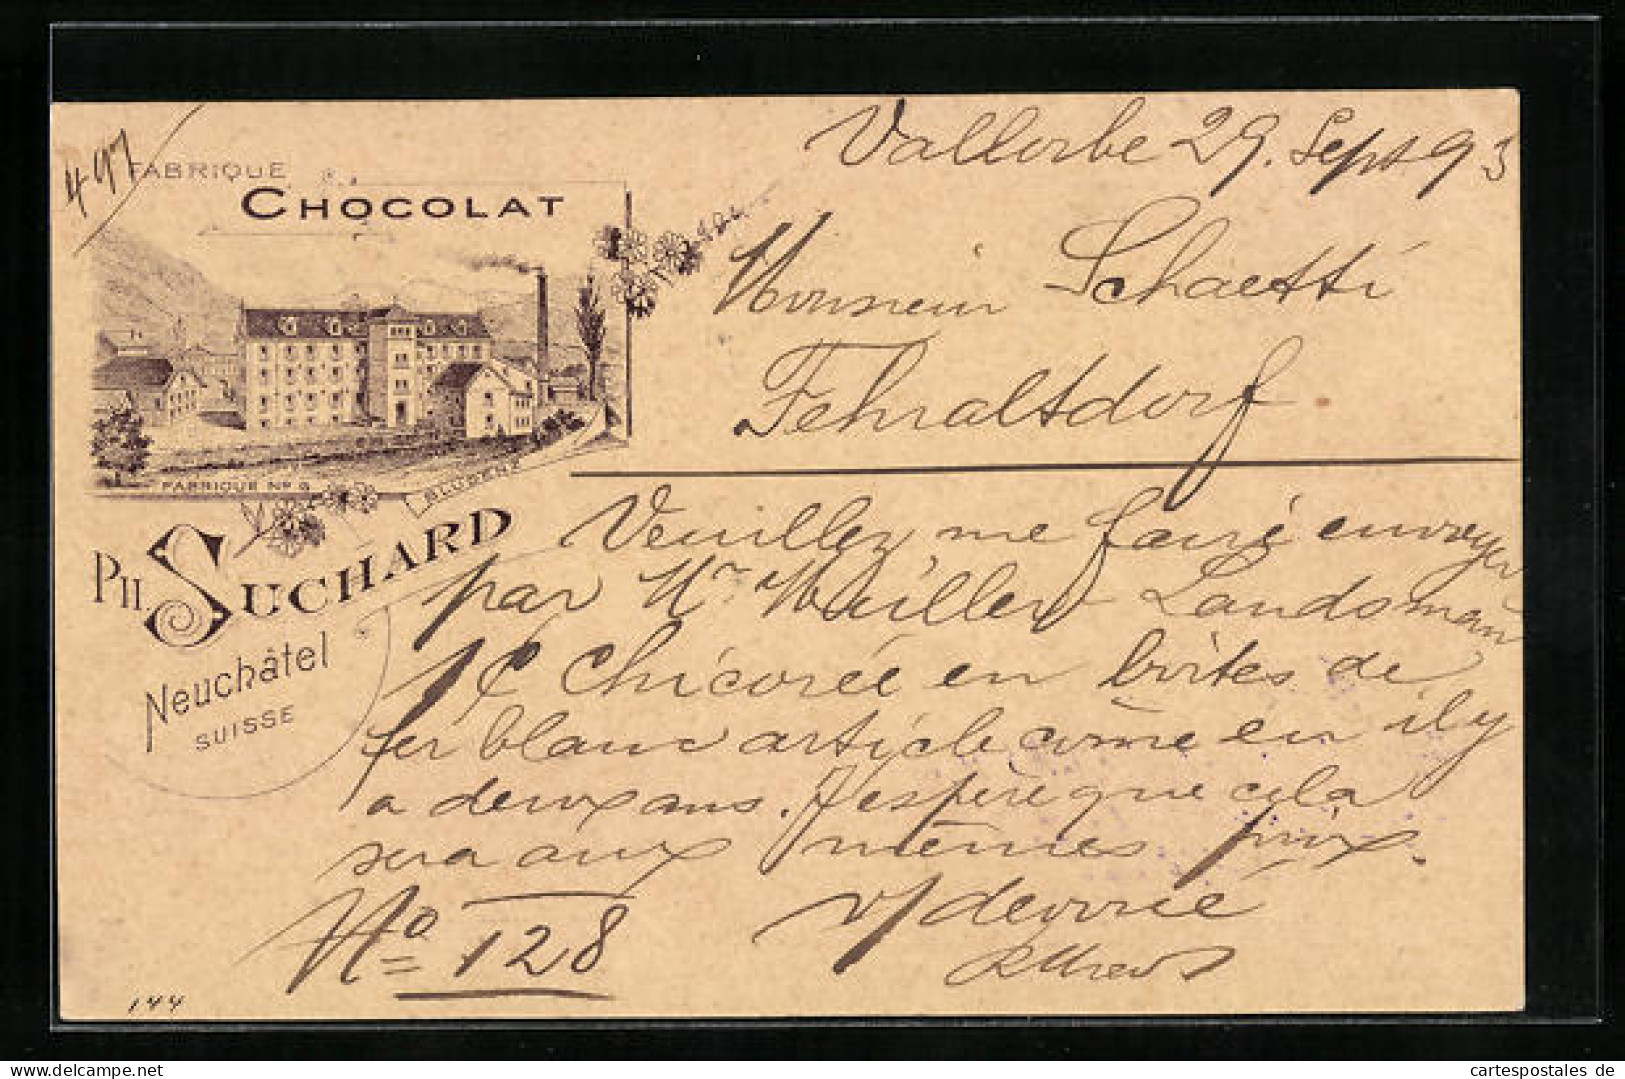 Vorläufer-Lithographie Neuchatel, 1893, Chocolat Suchard, Fabrique No. 6  - Landwirtschaftl. Anbau